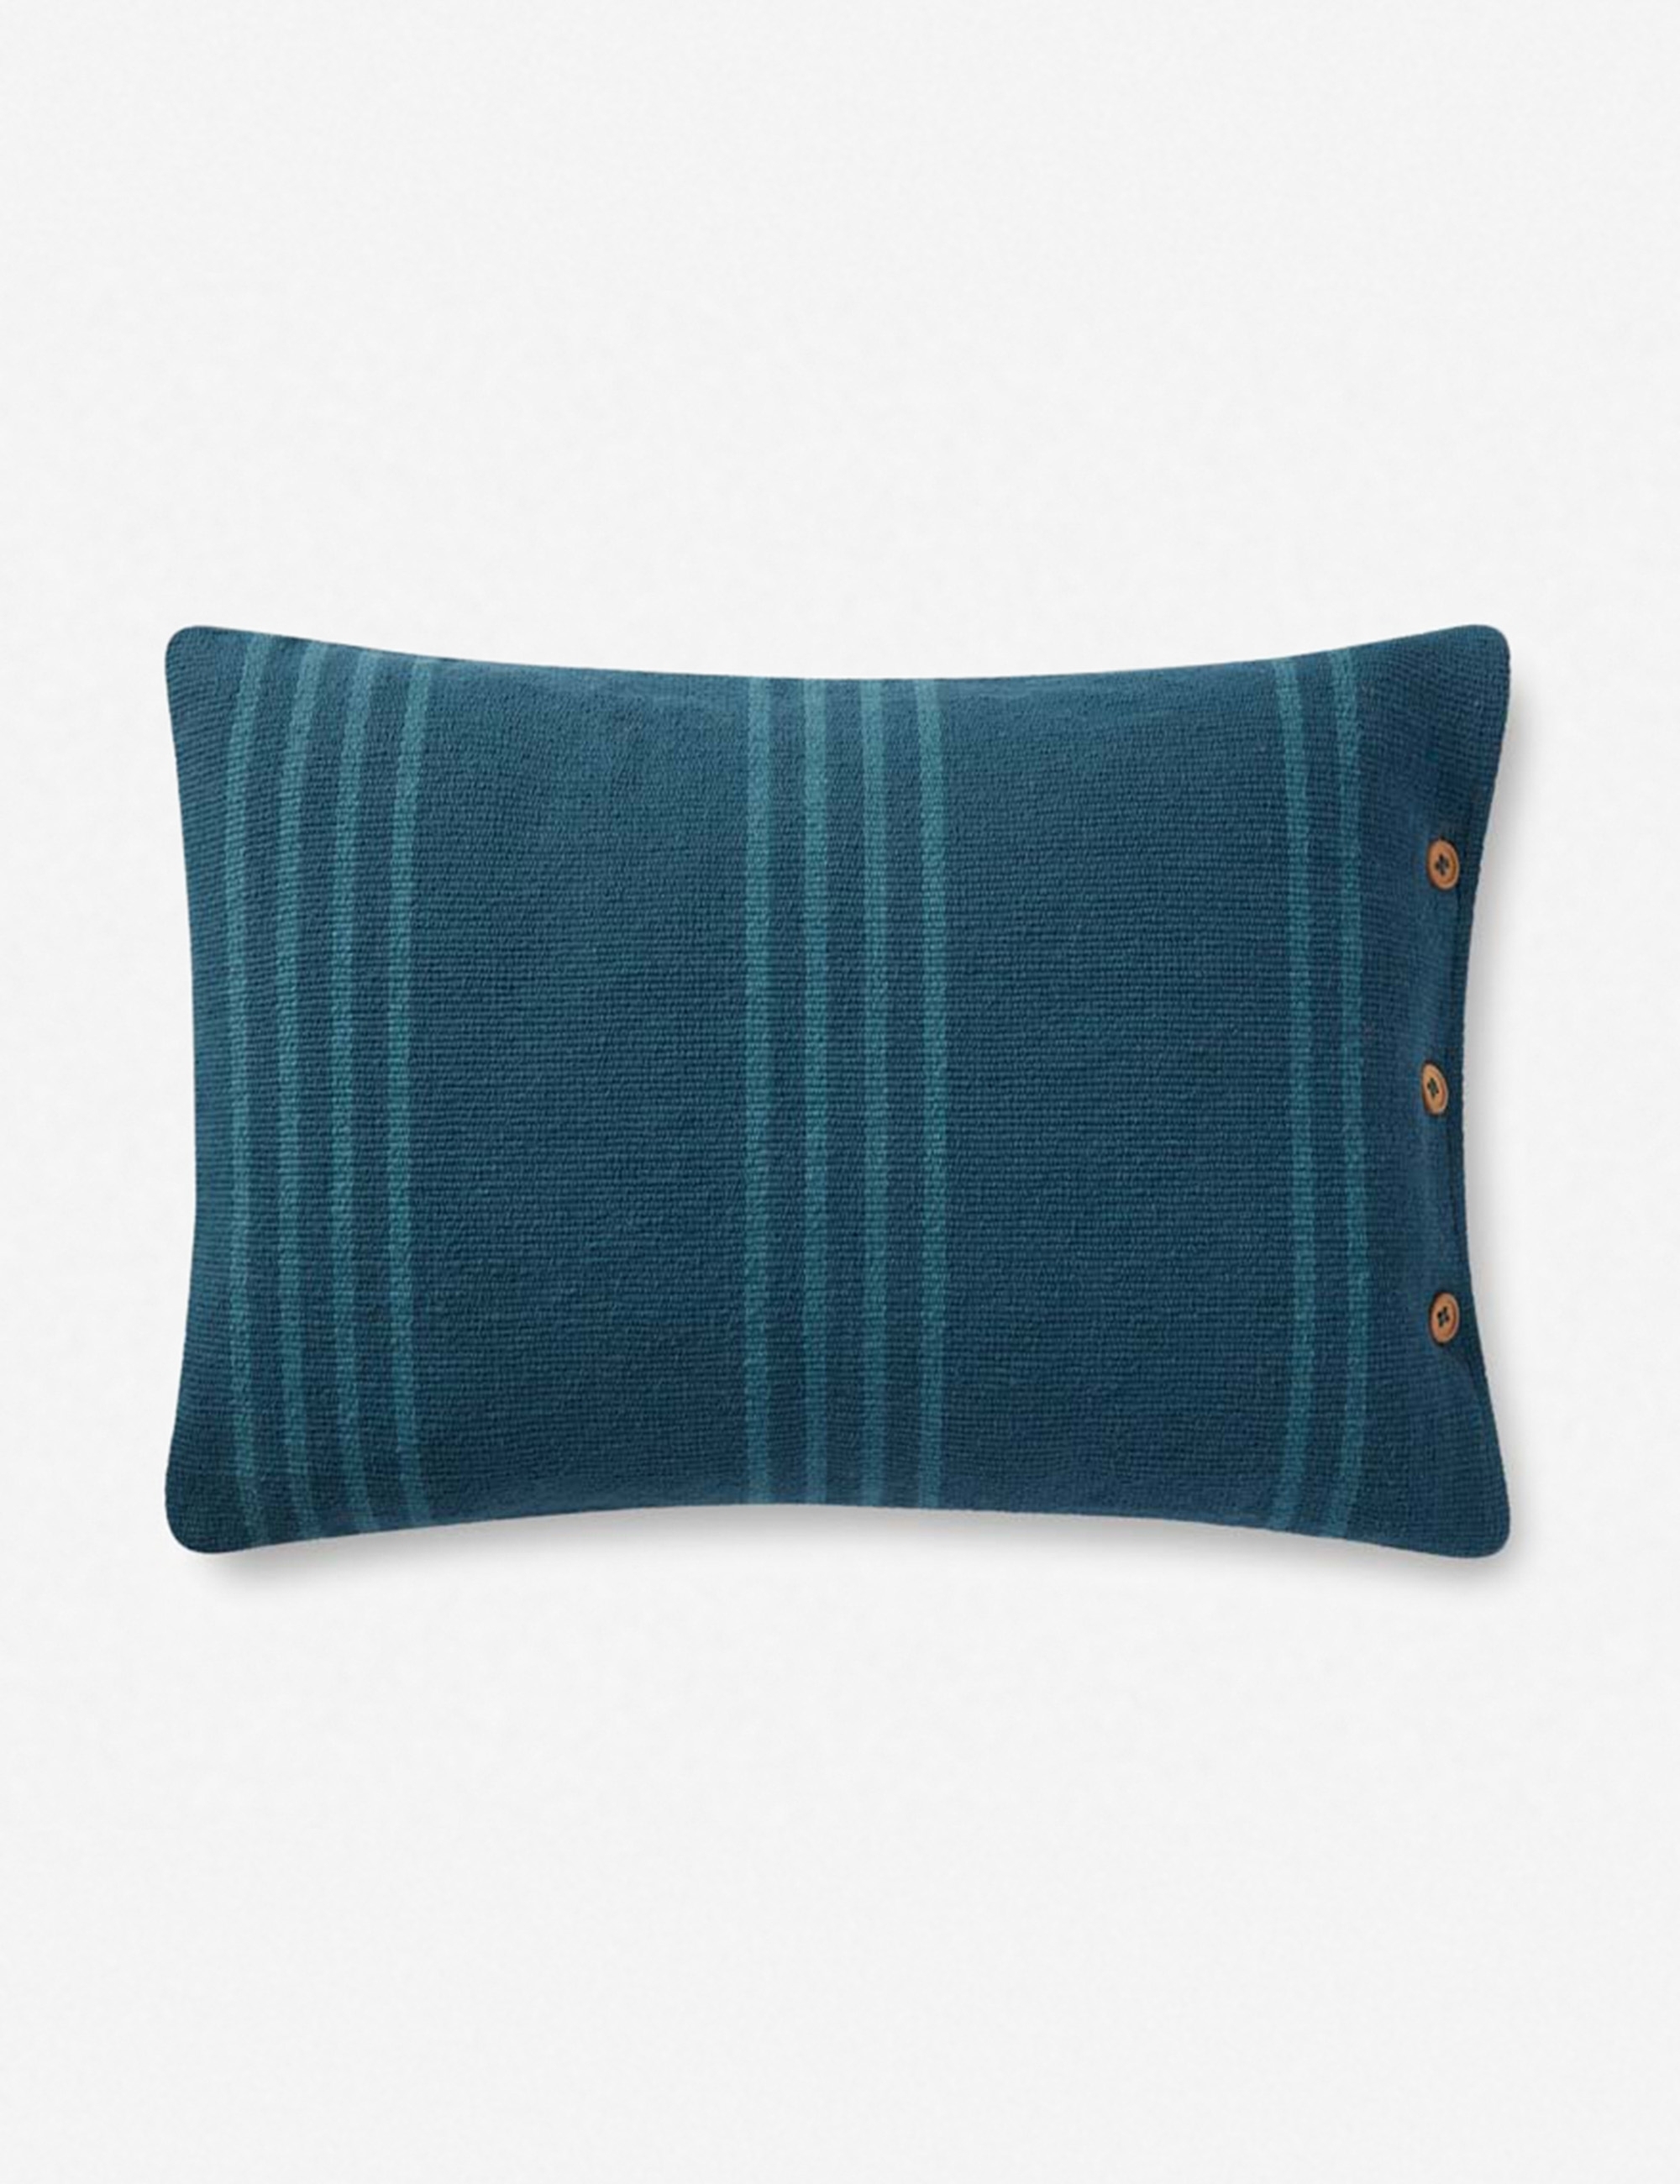 Rani Lumbar Pillow, Blue 16" x 20" - Image 0